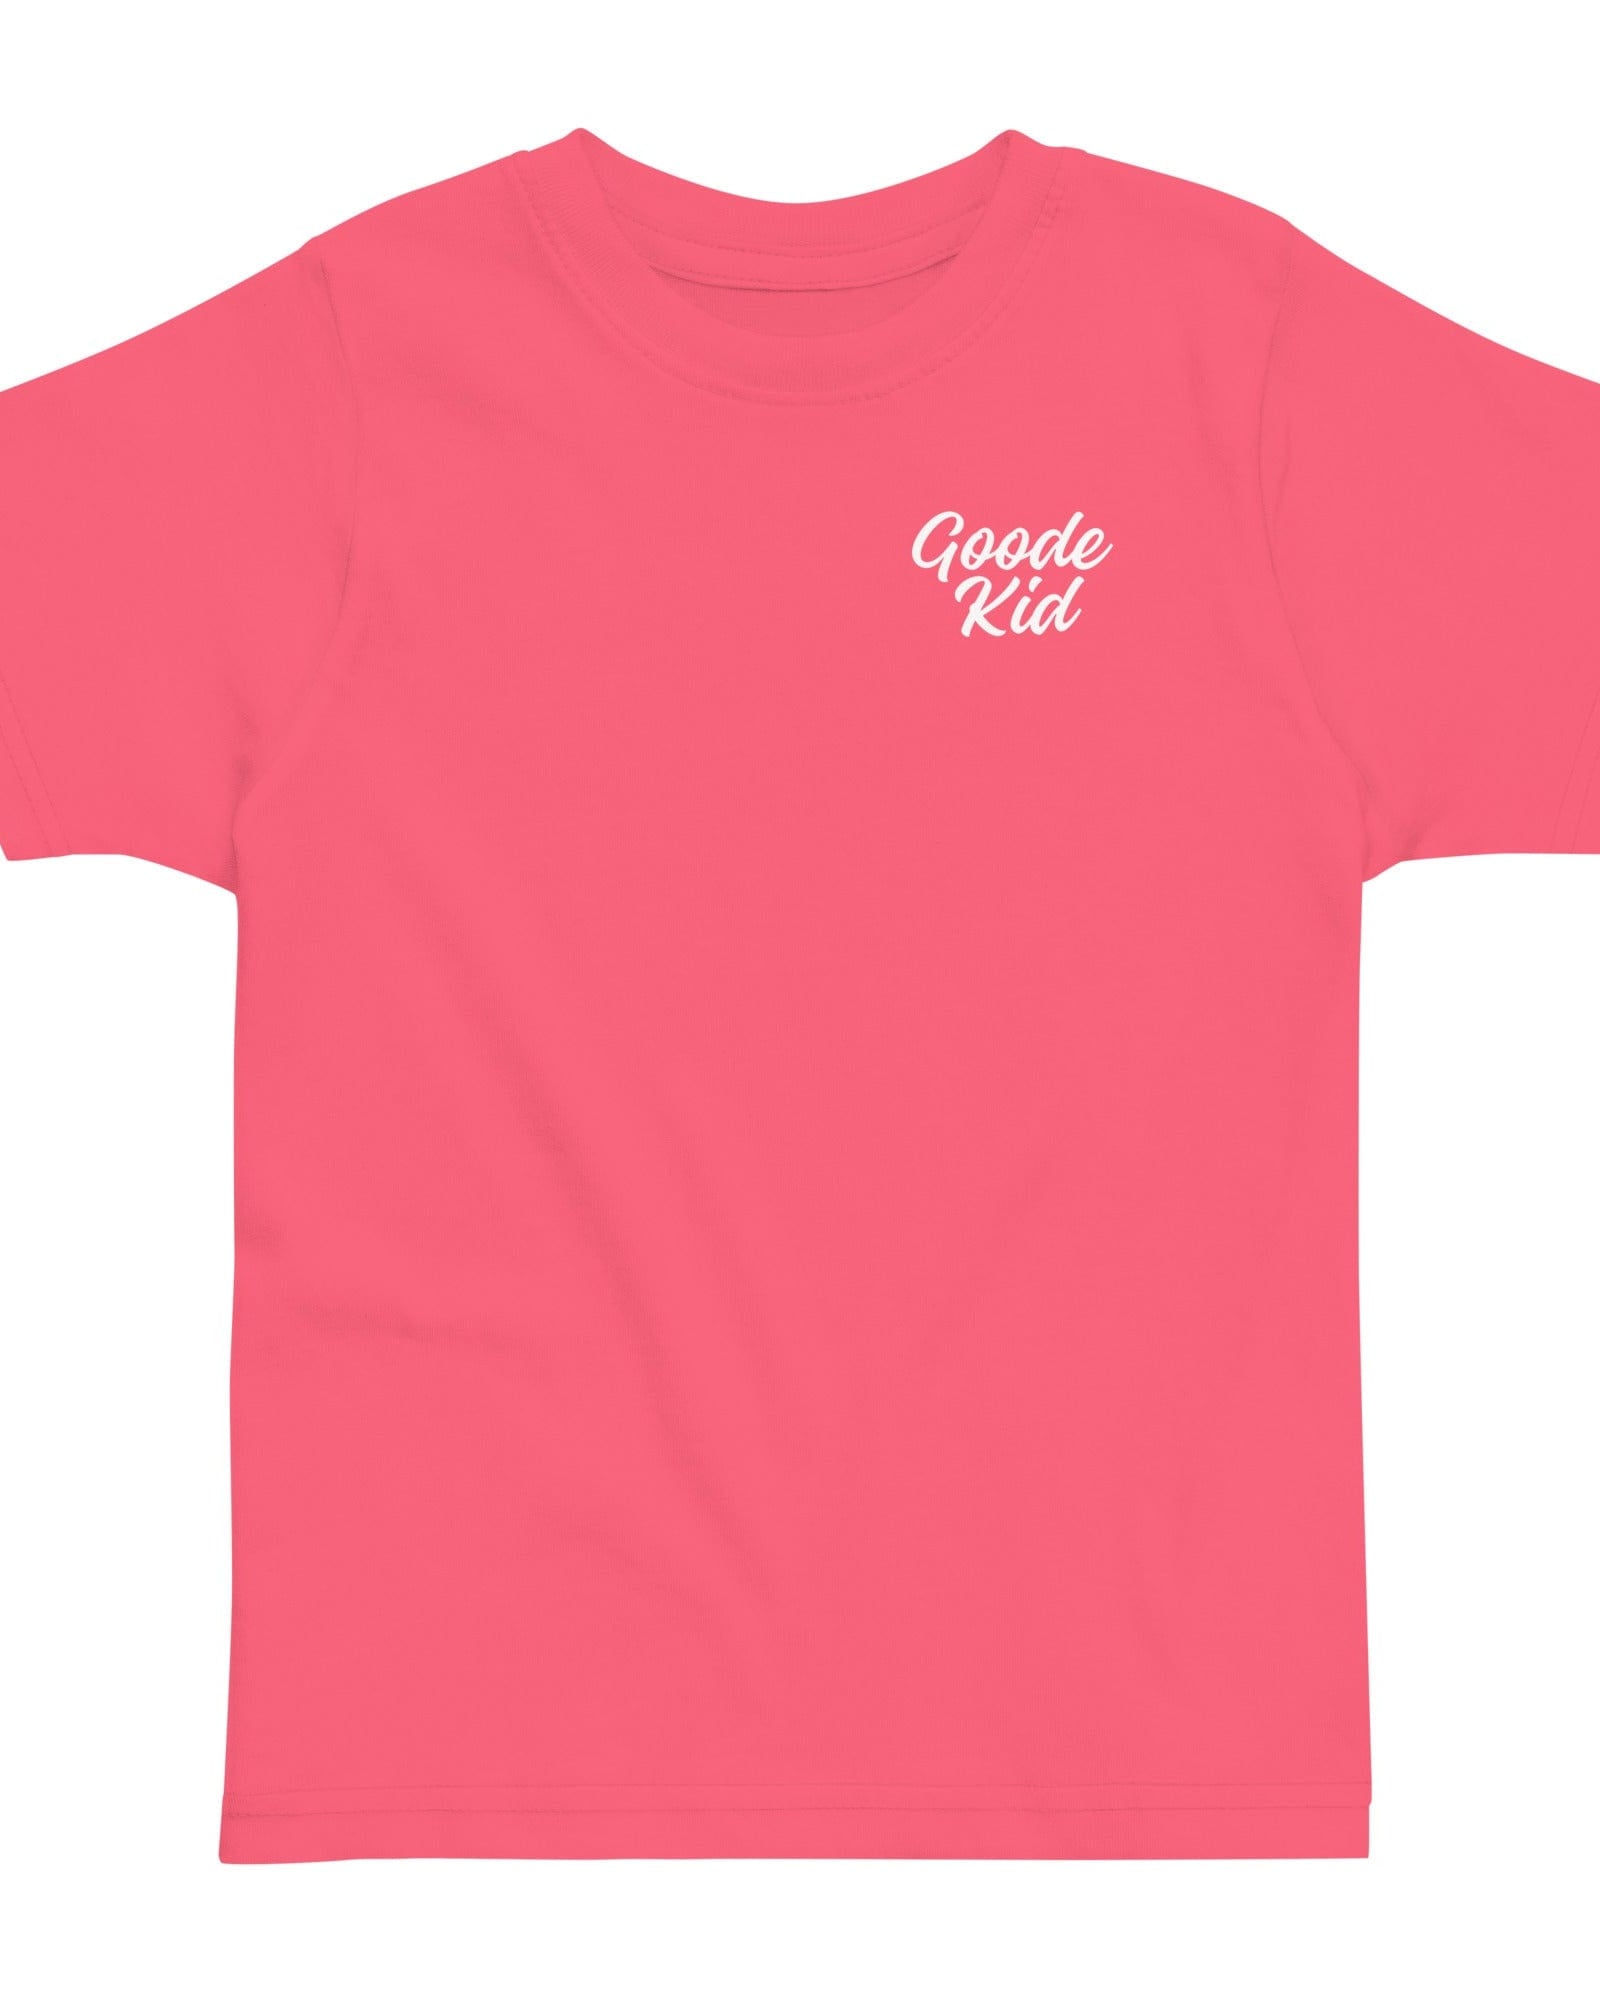 Goode Kid Toddler T-shirt Hot Pink / 2 kids t-shirts Jolly & Goode